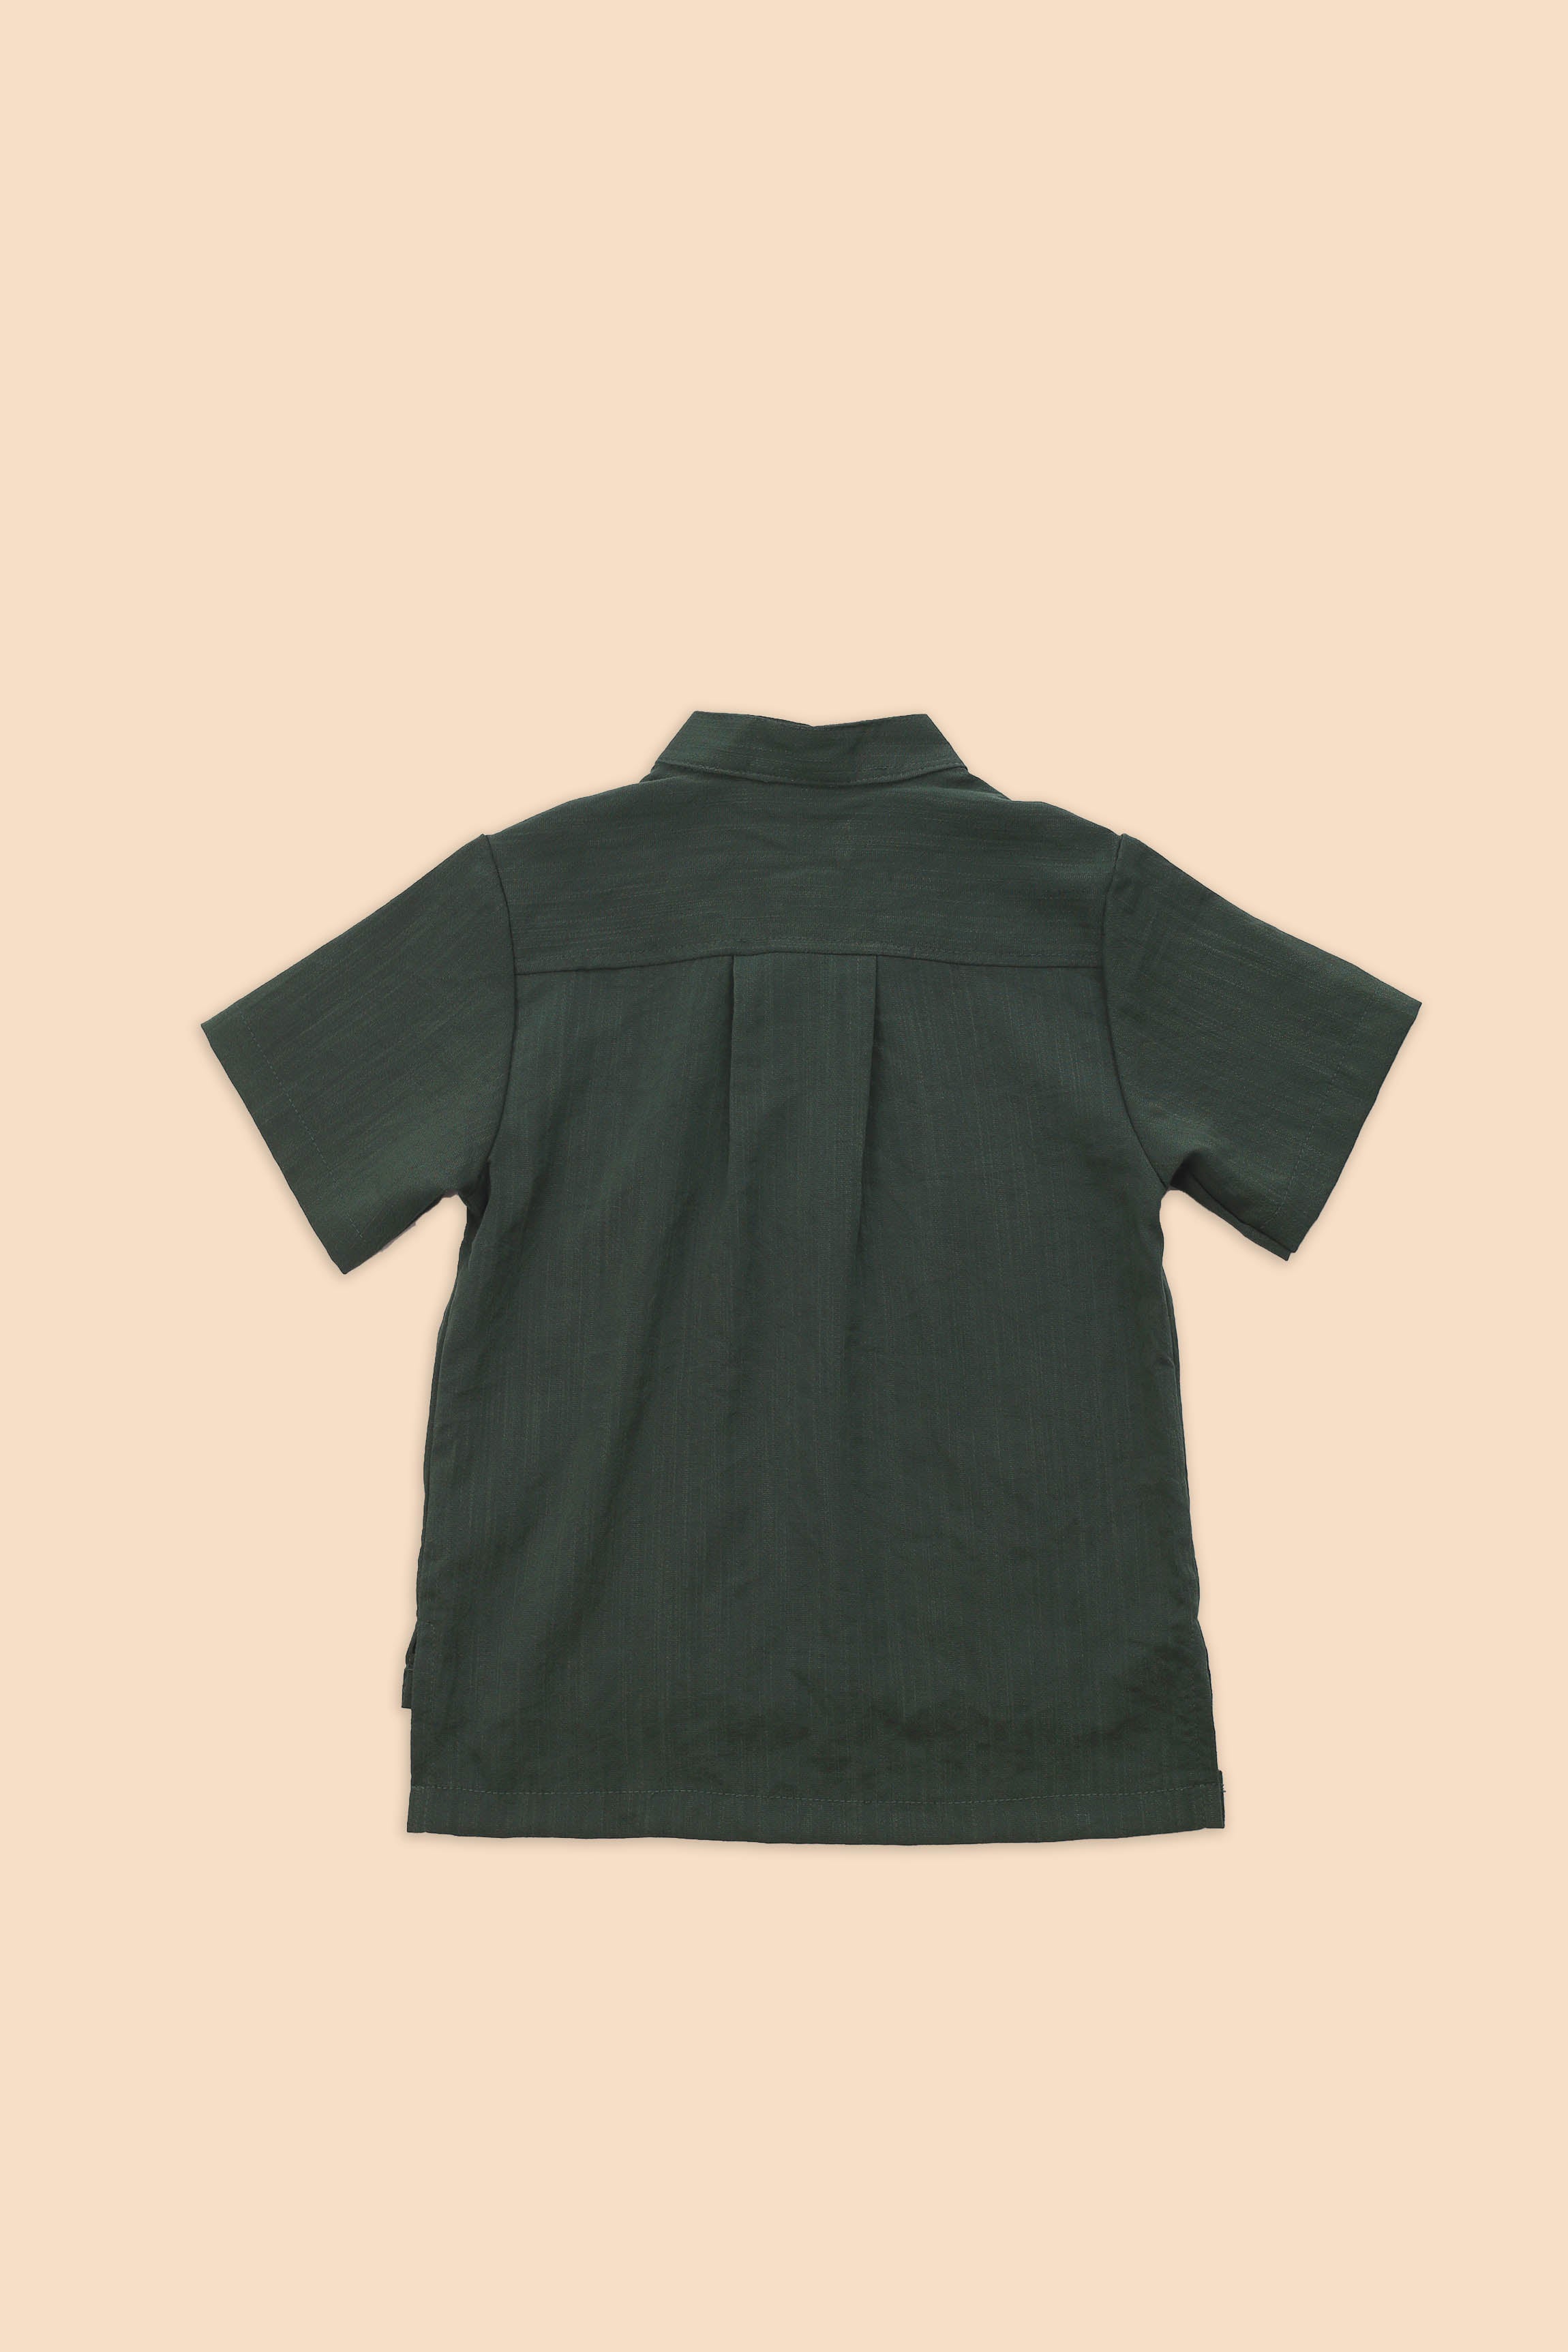 The Matahari Modern Short Sleeves Shirt Emerald